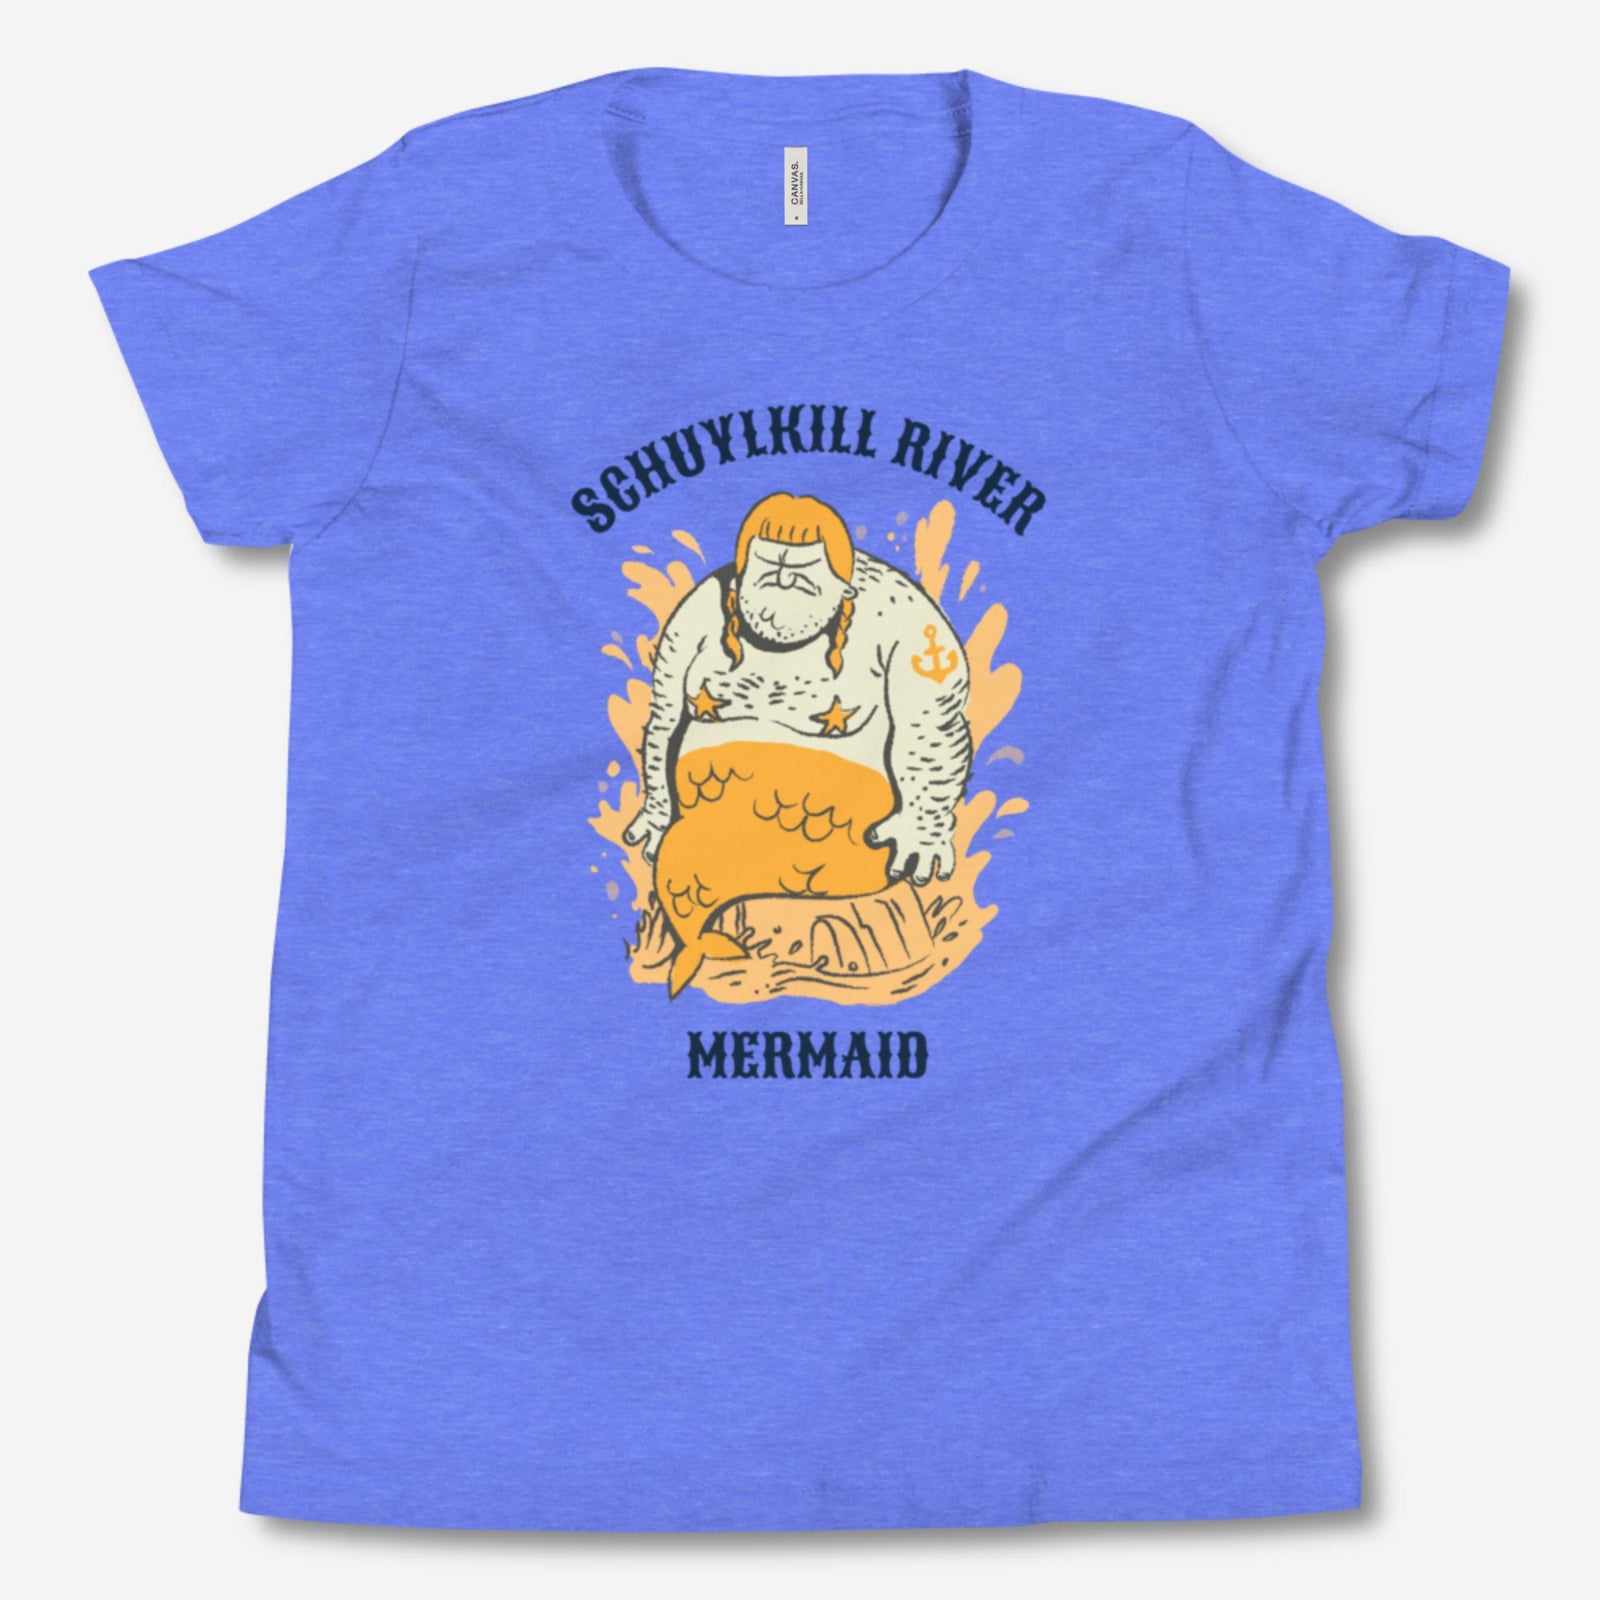 "Schuylkill River Mermaid" Youth Tee